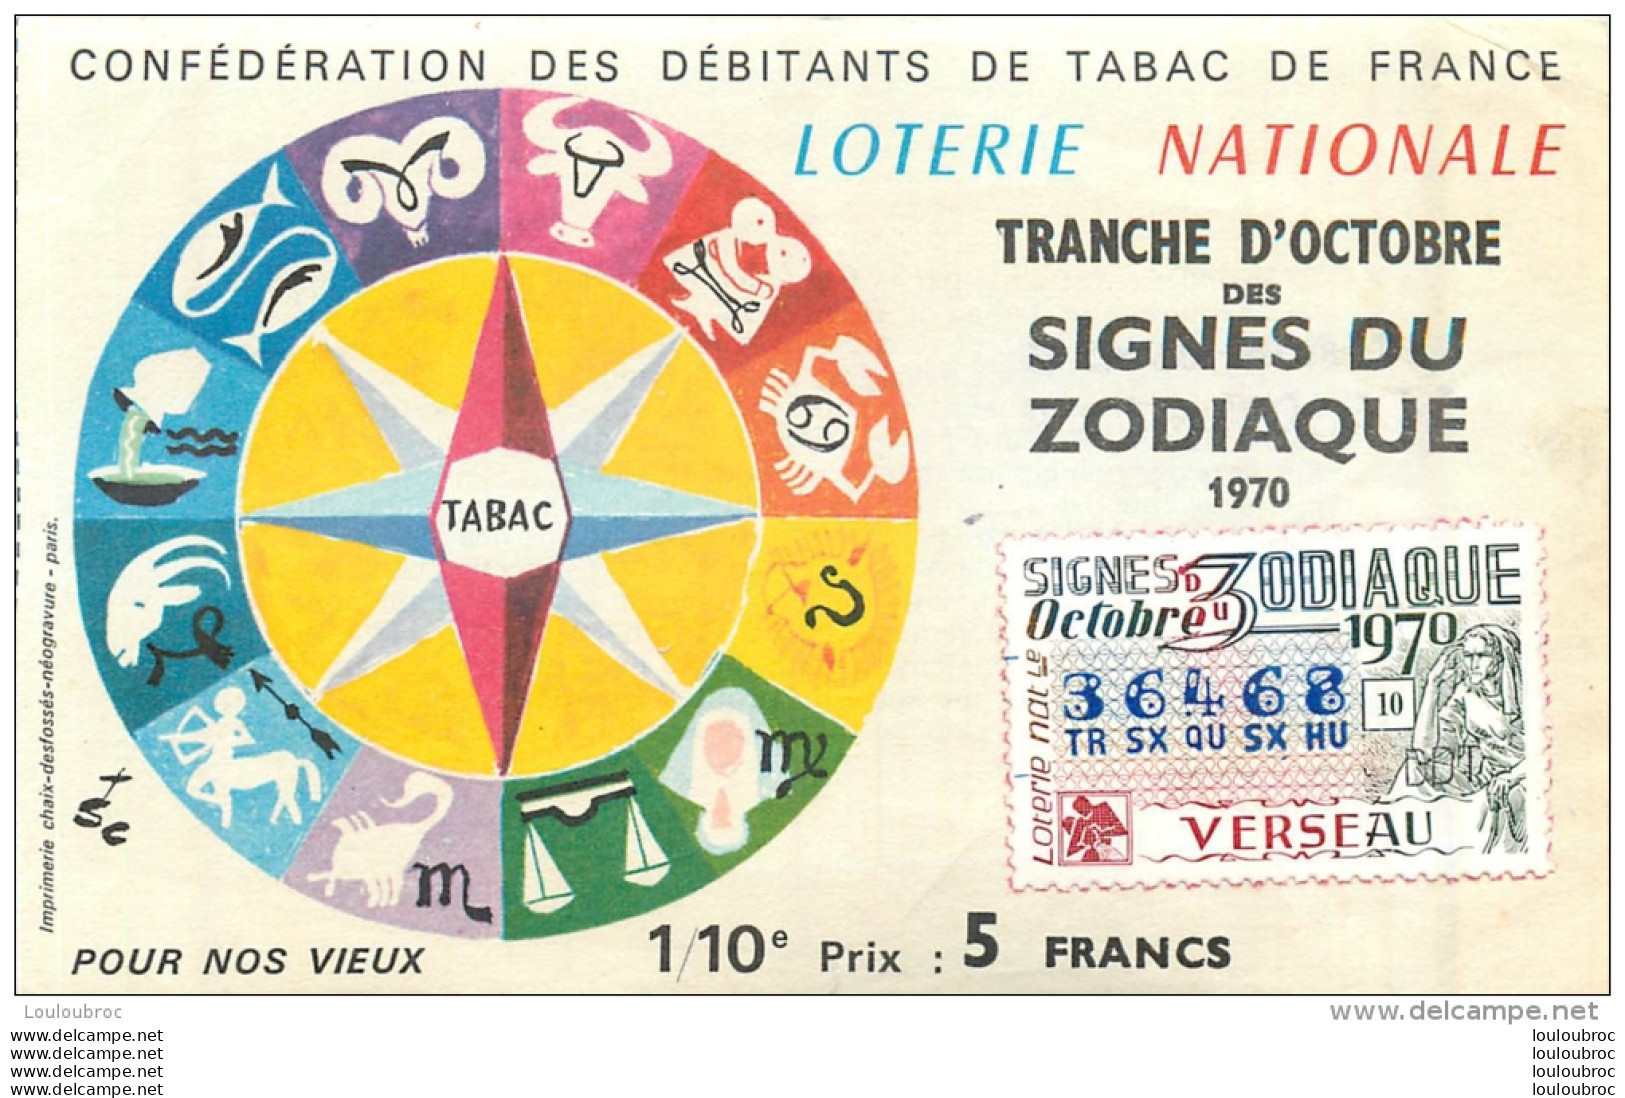 BILLET DE LOTERIE NATIONALE 1979 SIGNES DU ZODIAQUE VERSEAU - Lottery Tickets